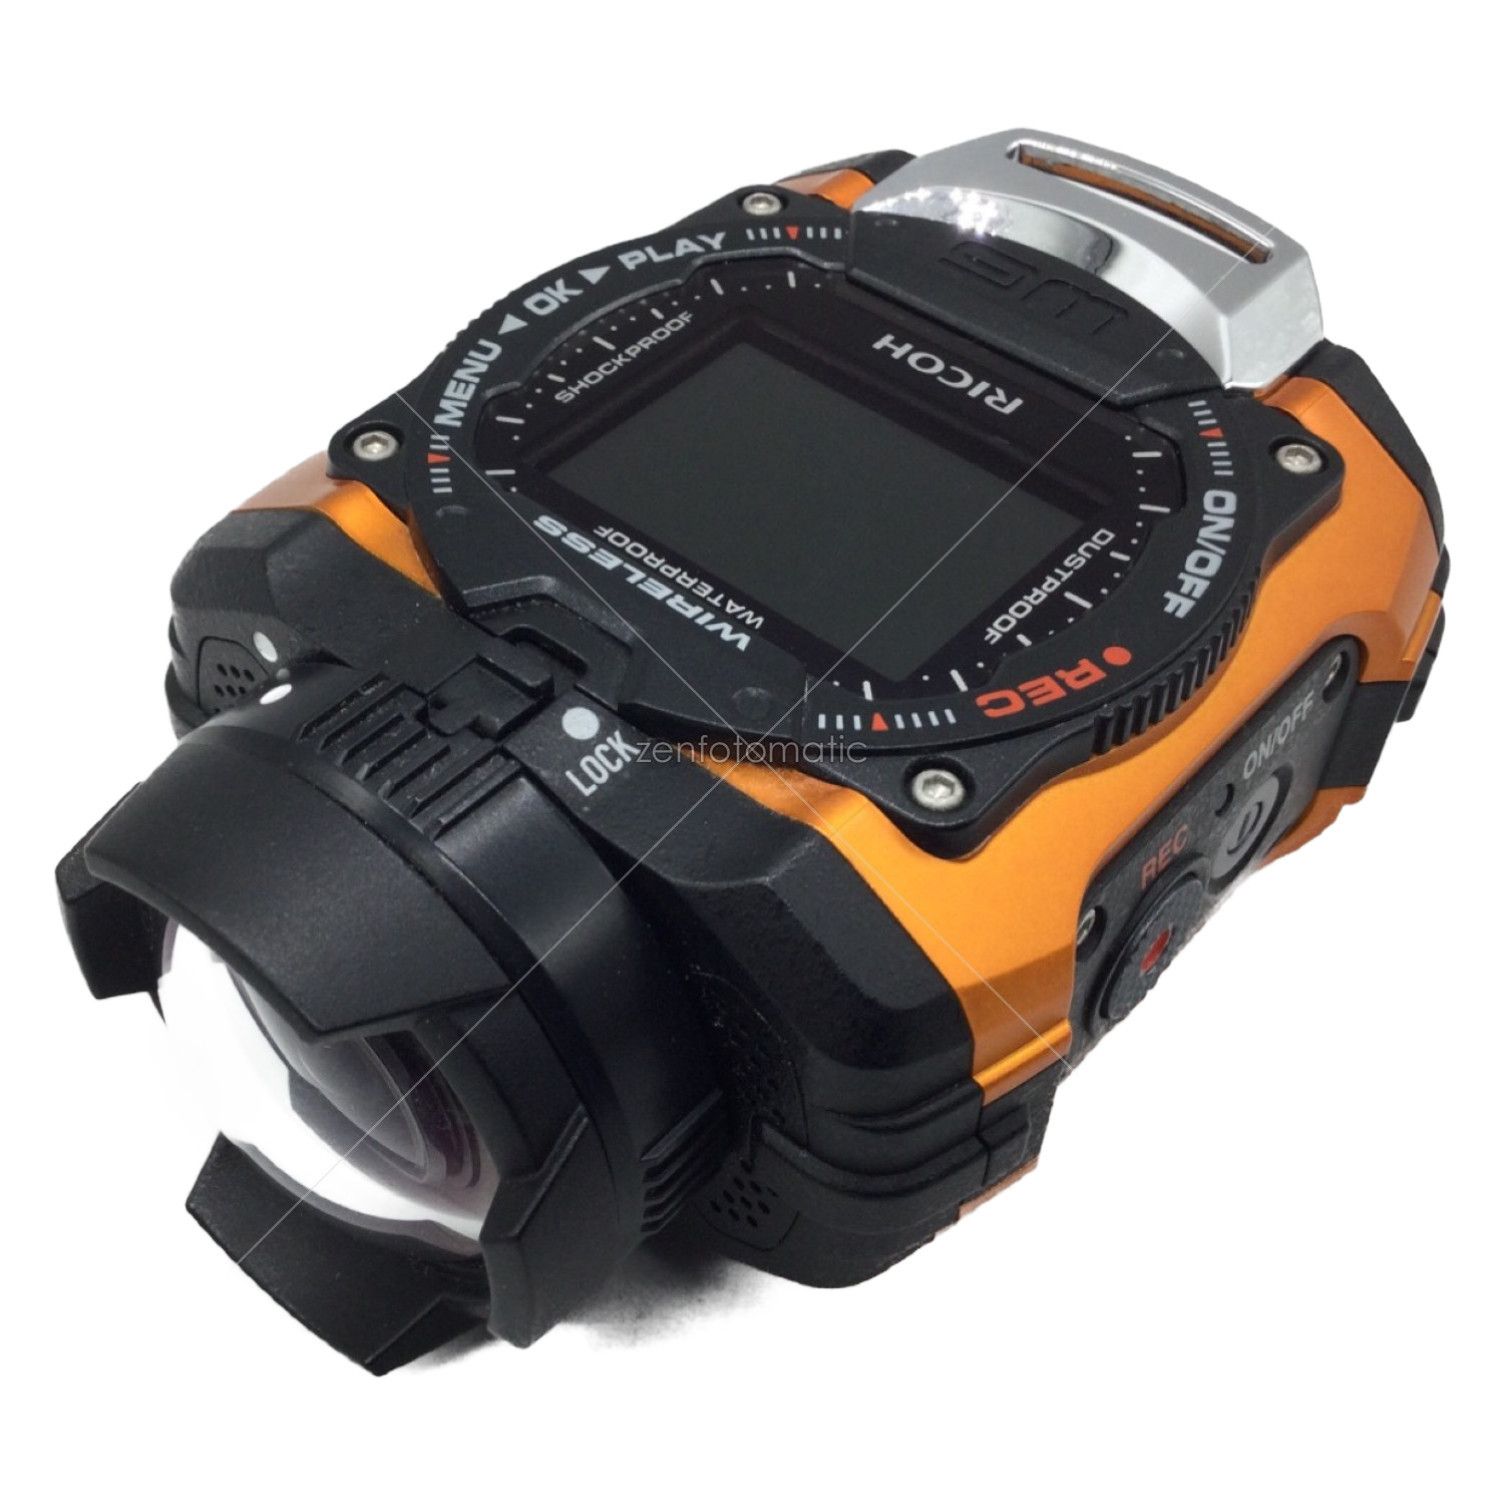 激安特価 08286 OR WG-M1 オレンジ WG-M1 防水アクションカメラ RICOH - LD